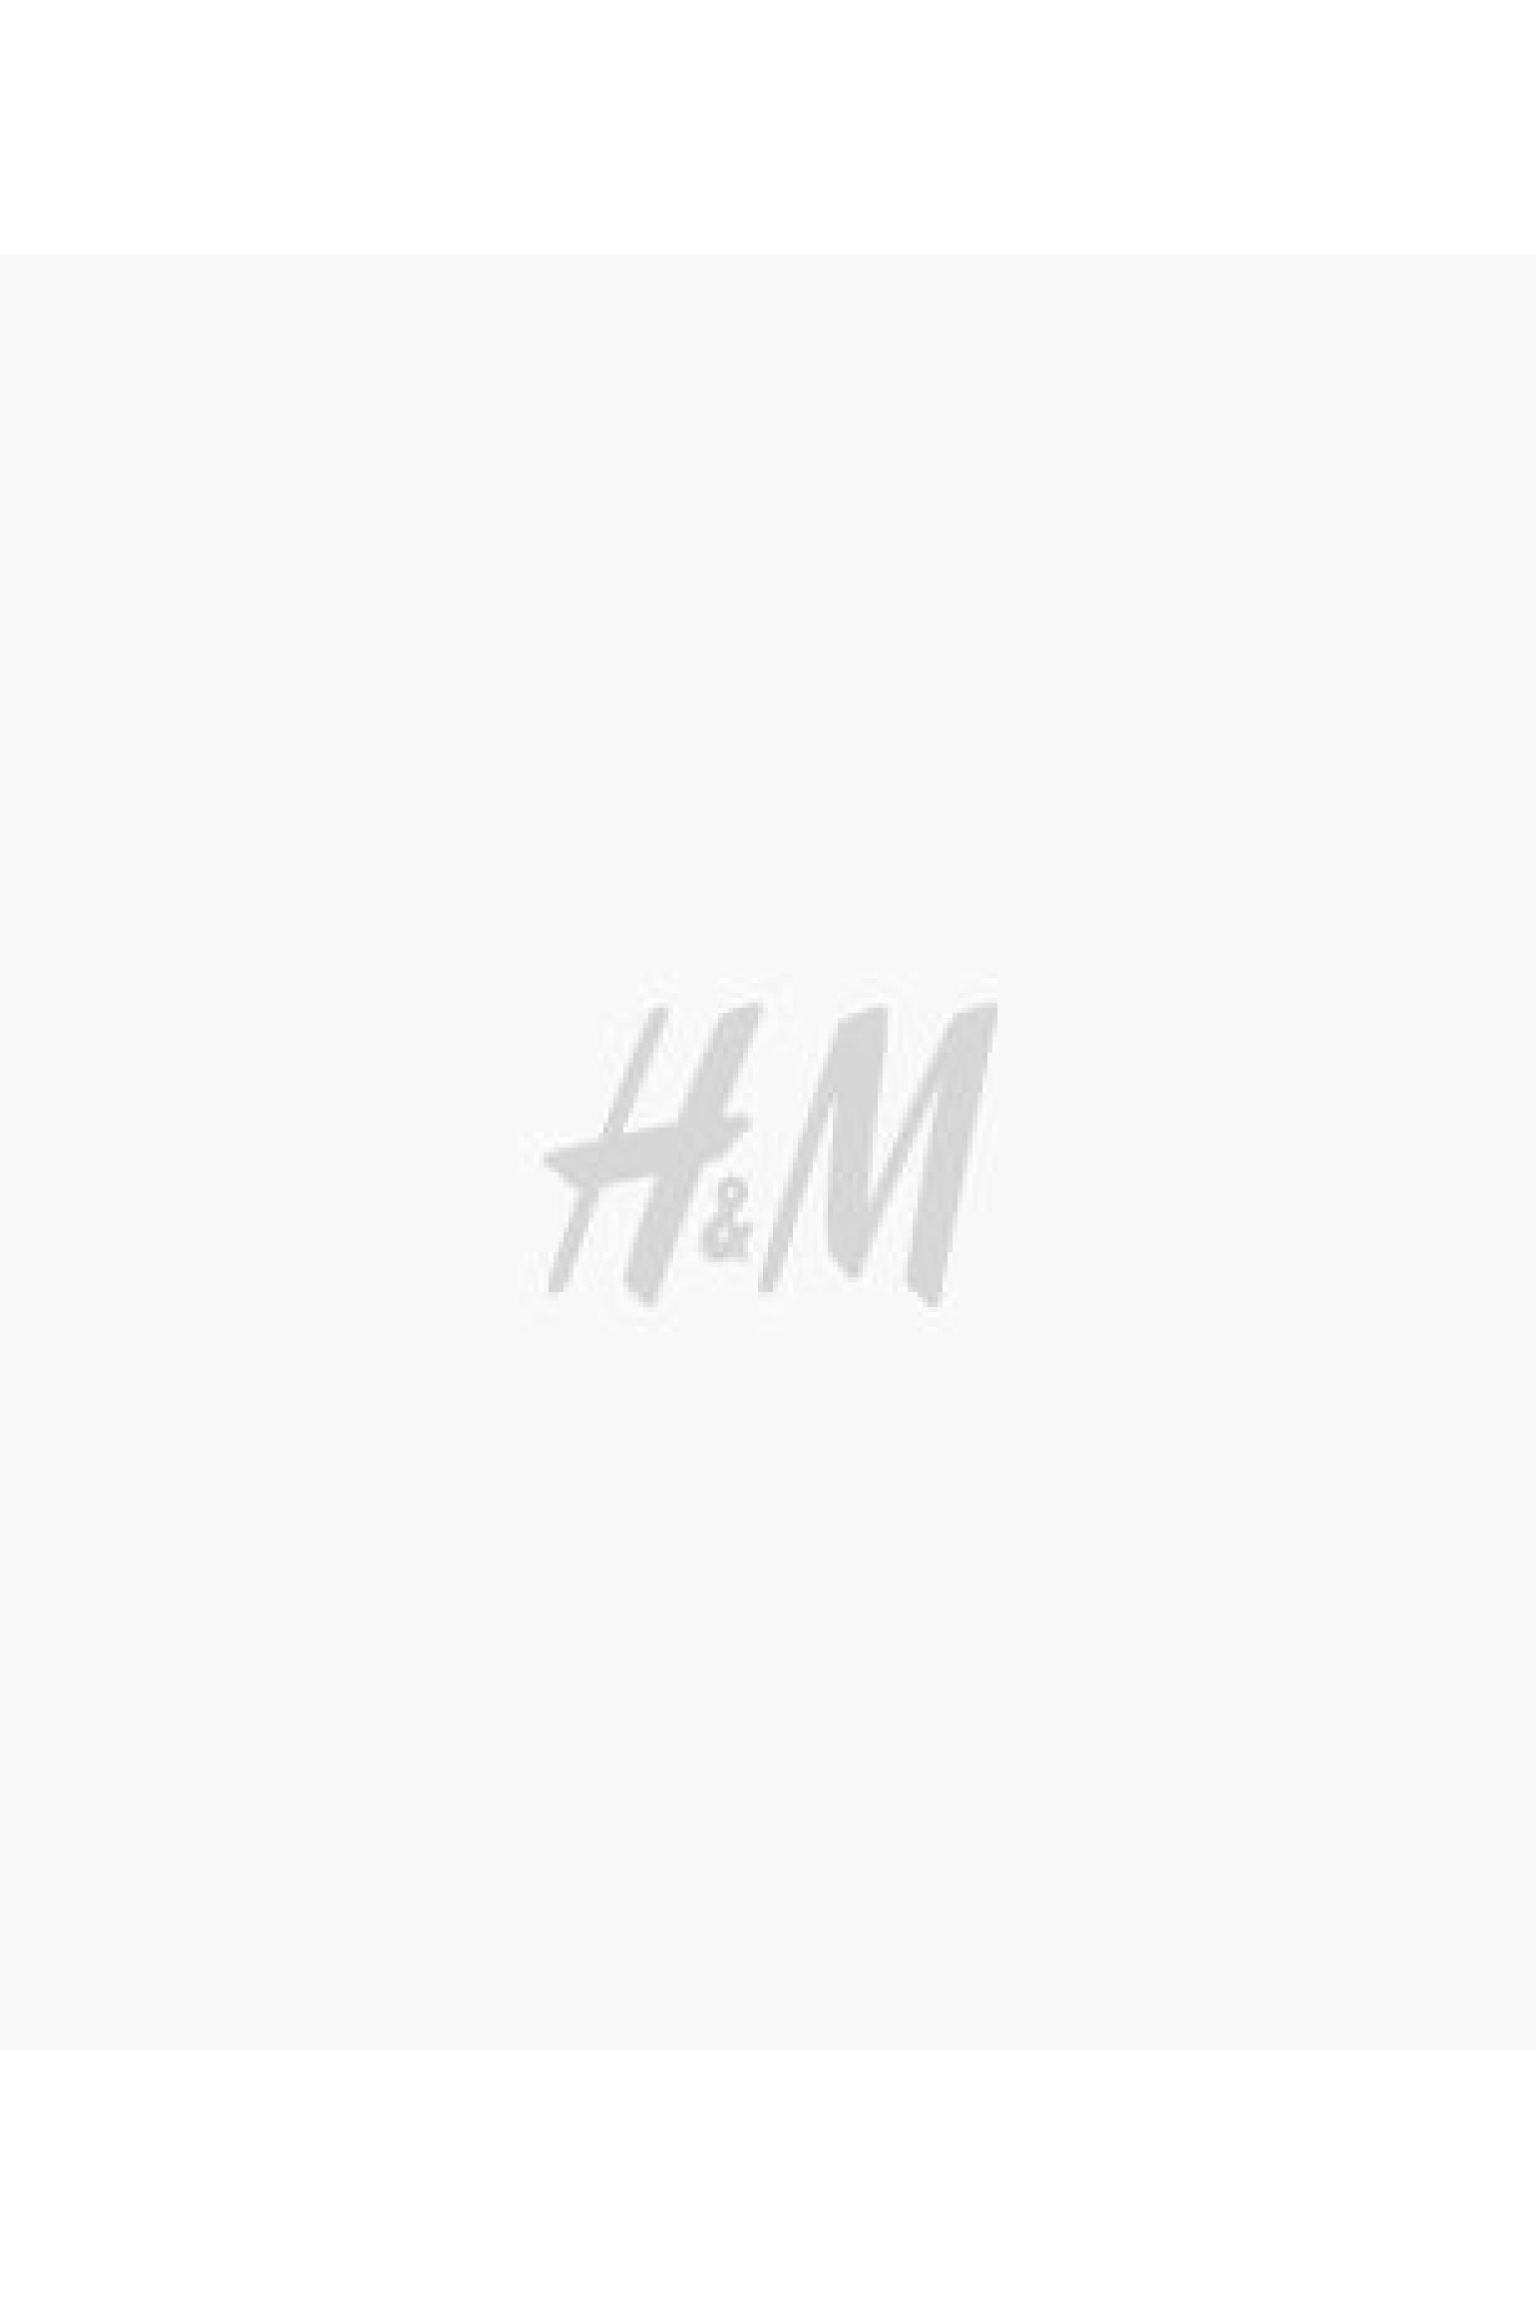 에이치앤엠 H&M Relaxed Fit Hoodie